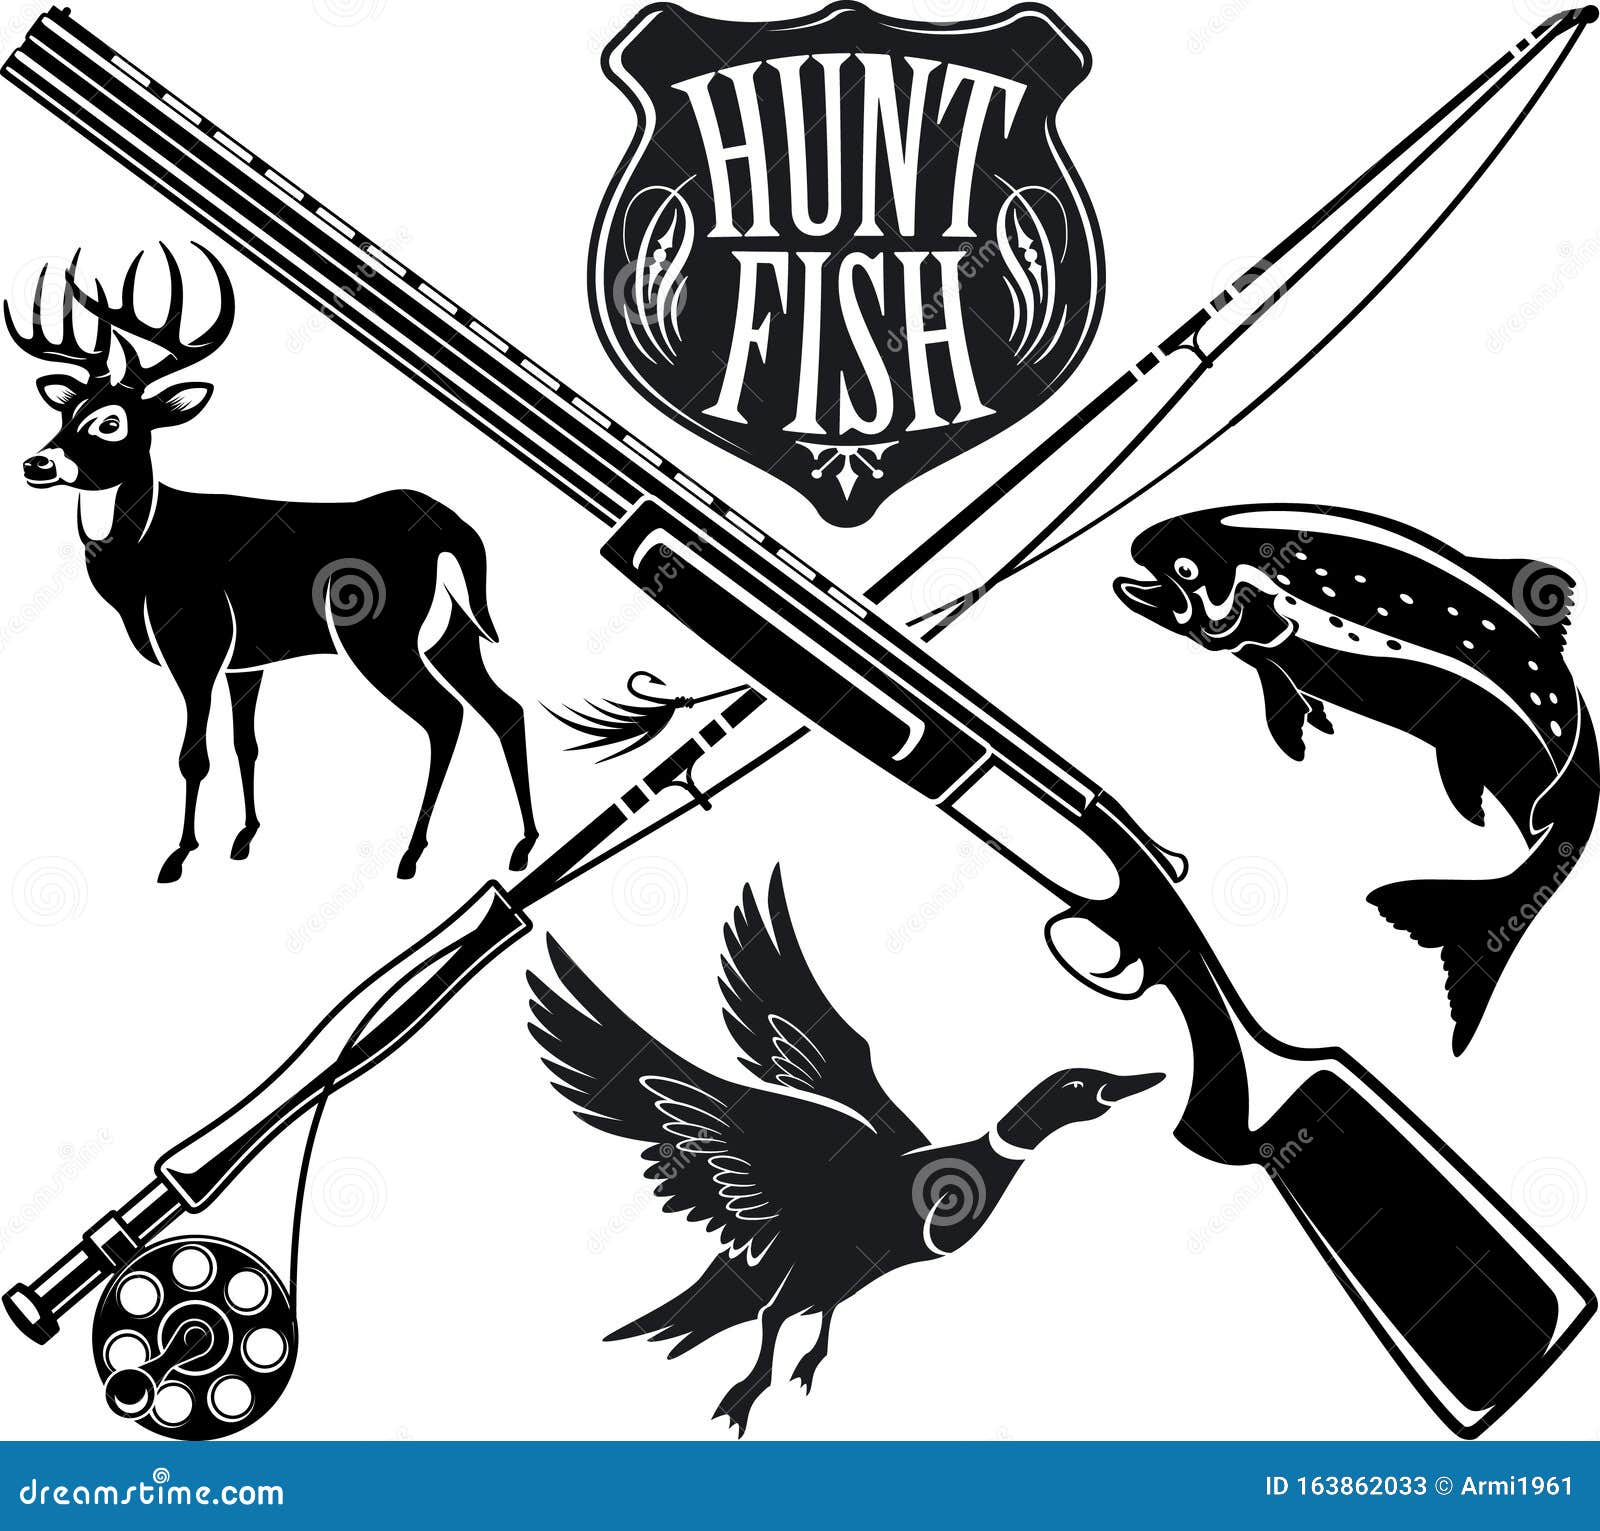 Hunting Fishing Logo Stock Illustrations – 4,283 Hunting Fishing